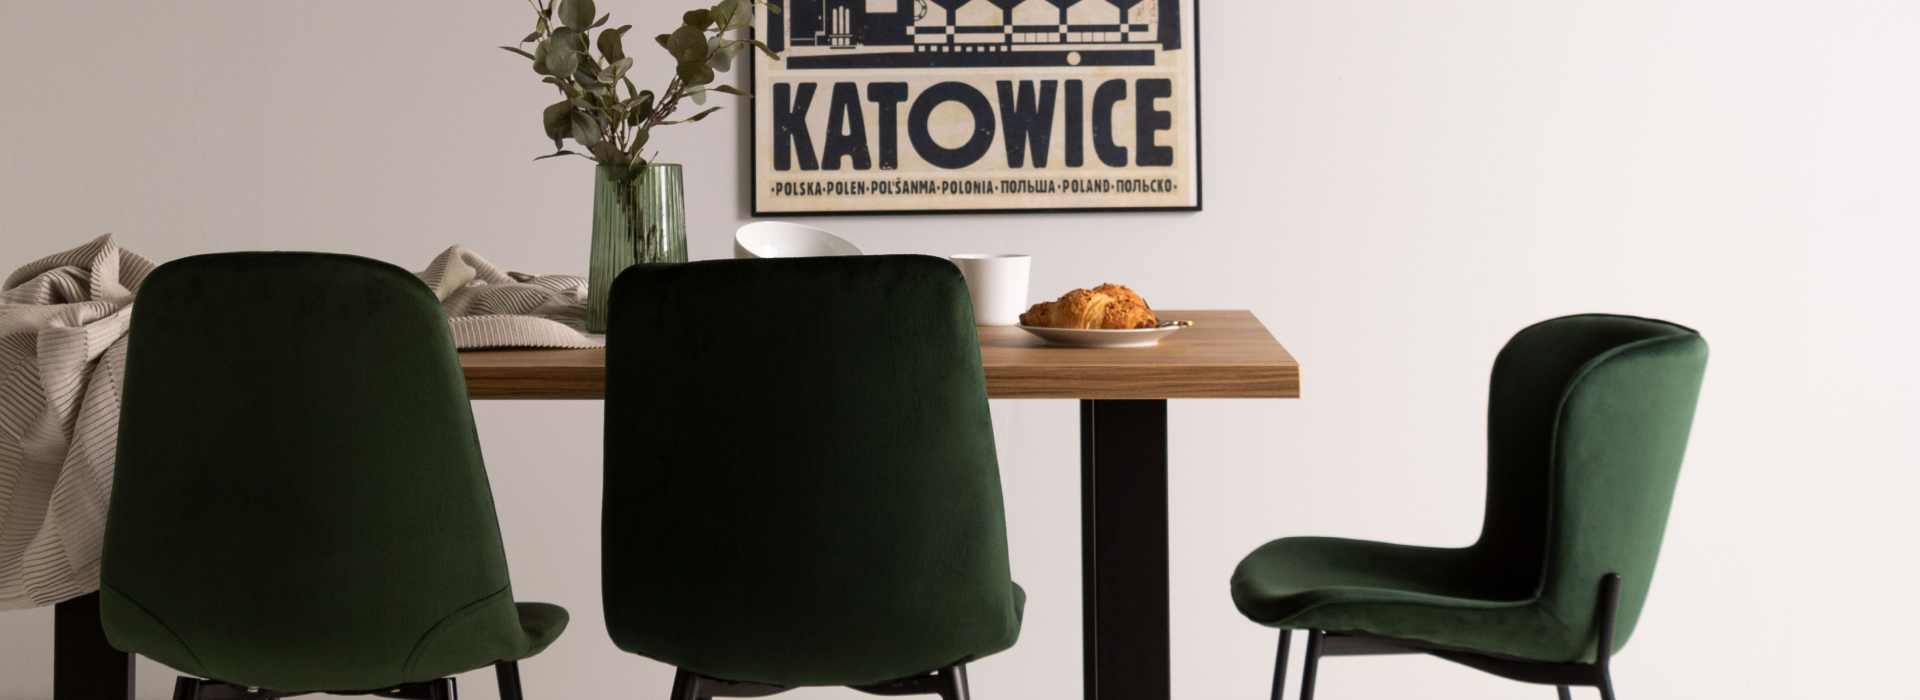 Butelkowo-zielone krzesła na czarnych nogach stojące wokół drewnianego stołu na czarnej konstrukcji. Na stole zastawa stołowa oraz zielony szklany wazon, w tle plakat z napisem „Katowice”.